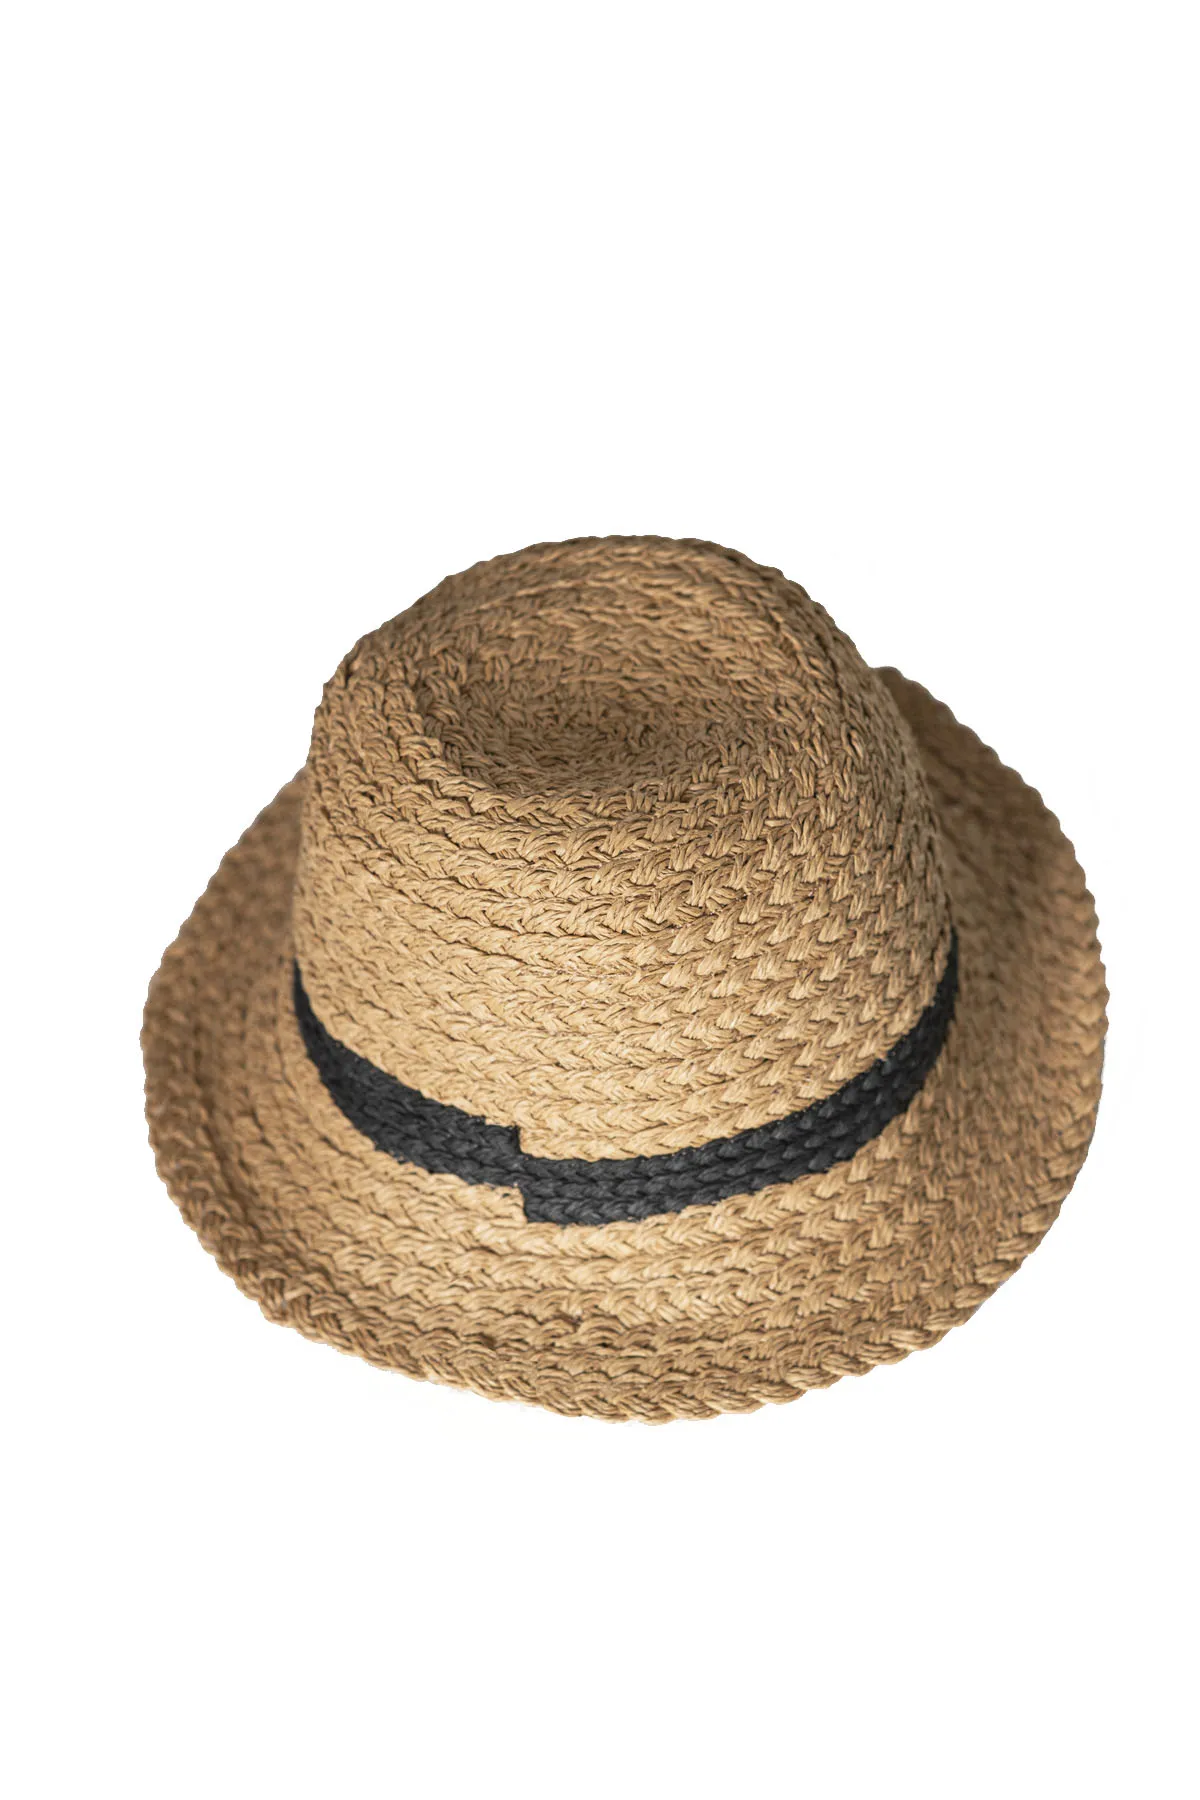 В полоску; С рельефным рисунком, фетровая шляпка шерстяная Для женщин соломенная шляпа пляжная шляпа от солнца Кепки женская летняя шляпа с ... от AliExpress RU&CIS NEW